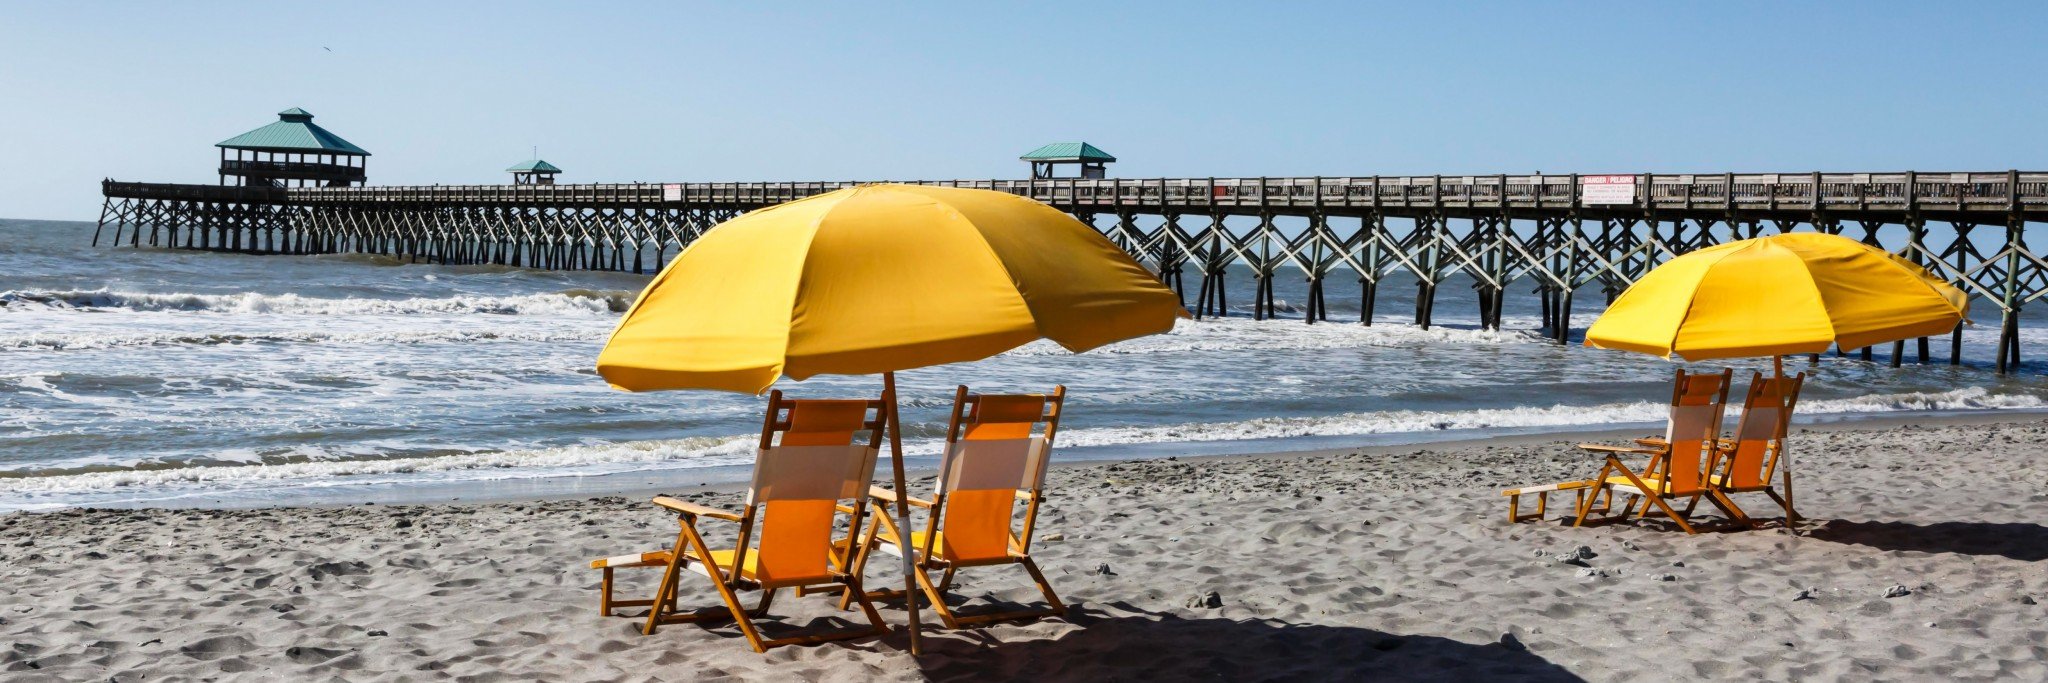 folly beach pier with yellow umbrella